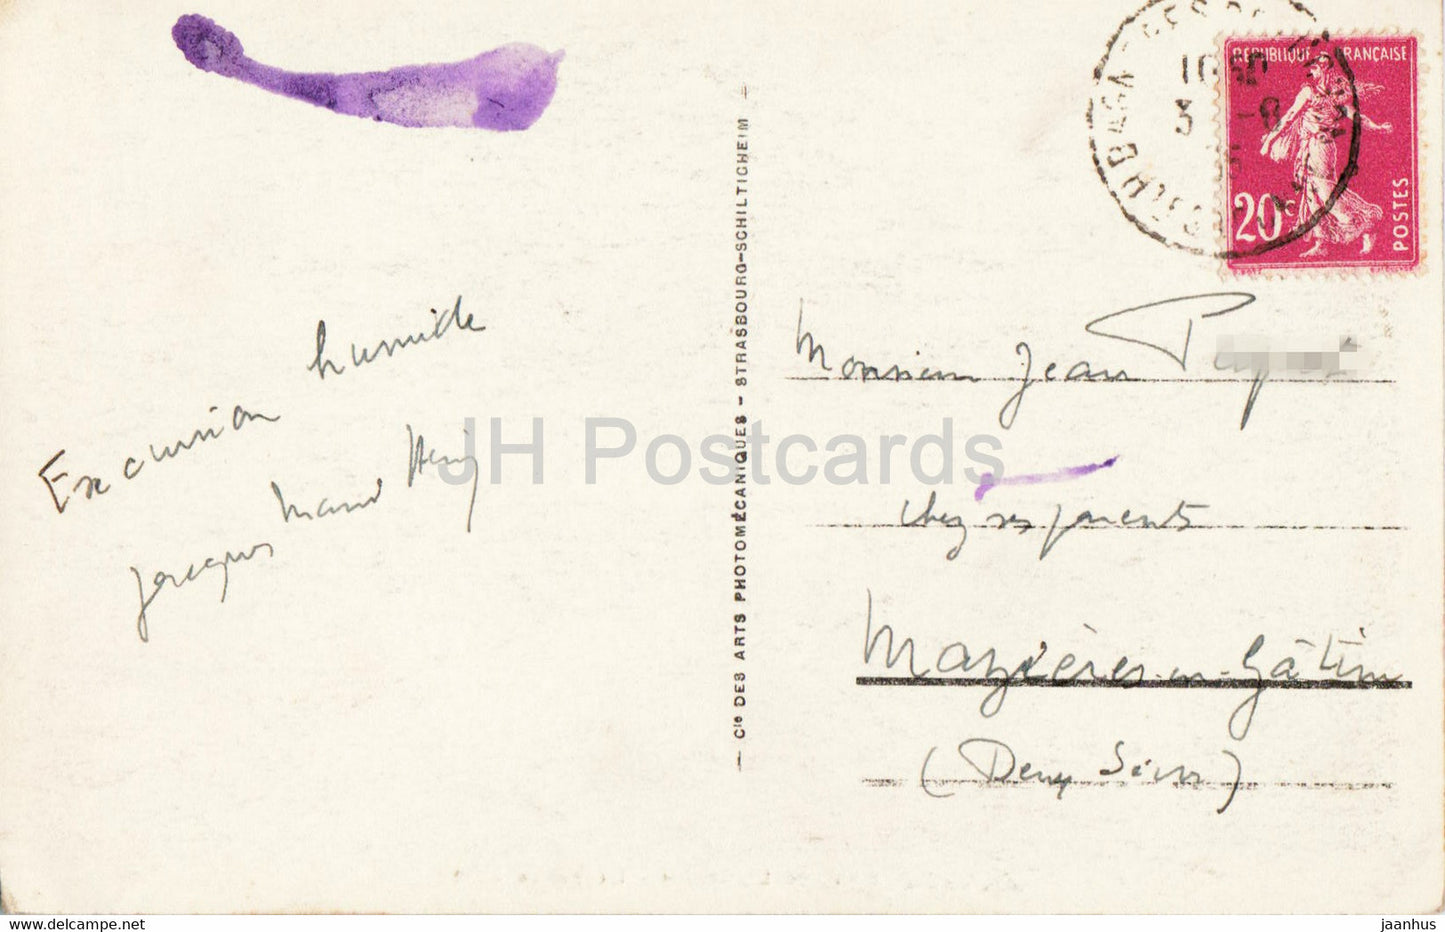 Env de Luchon - La Vallée d'Oo - 112 - carte postale ancienne - 1935 - France - occasion